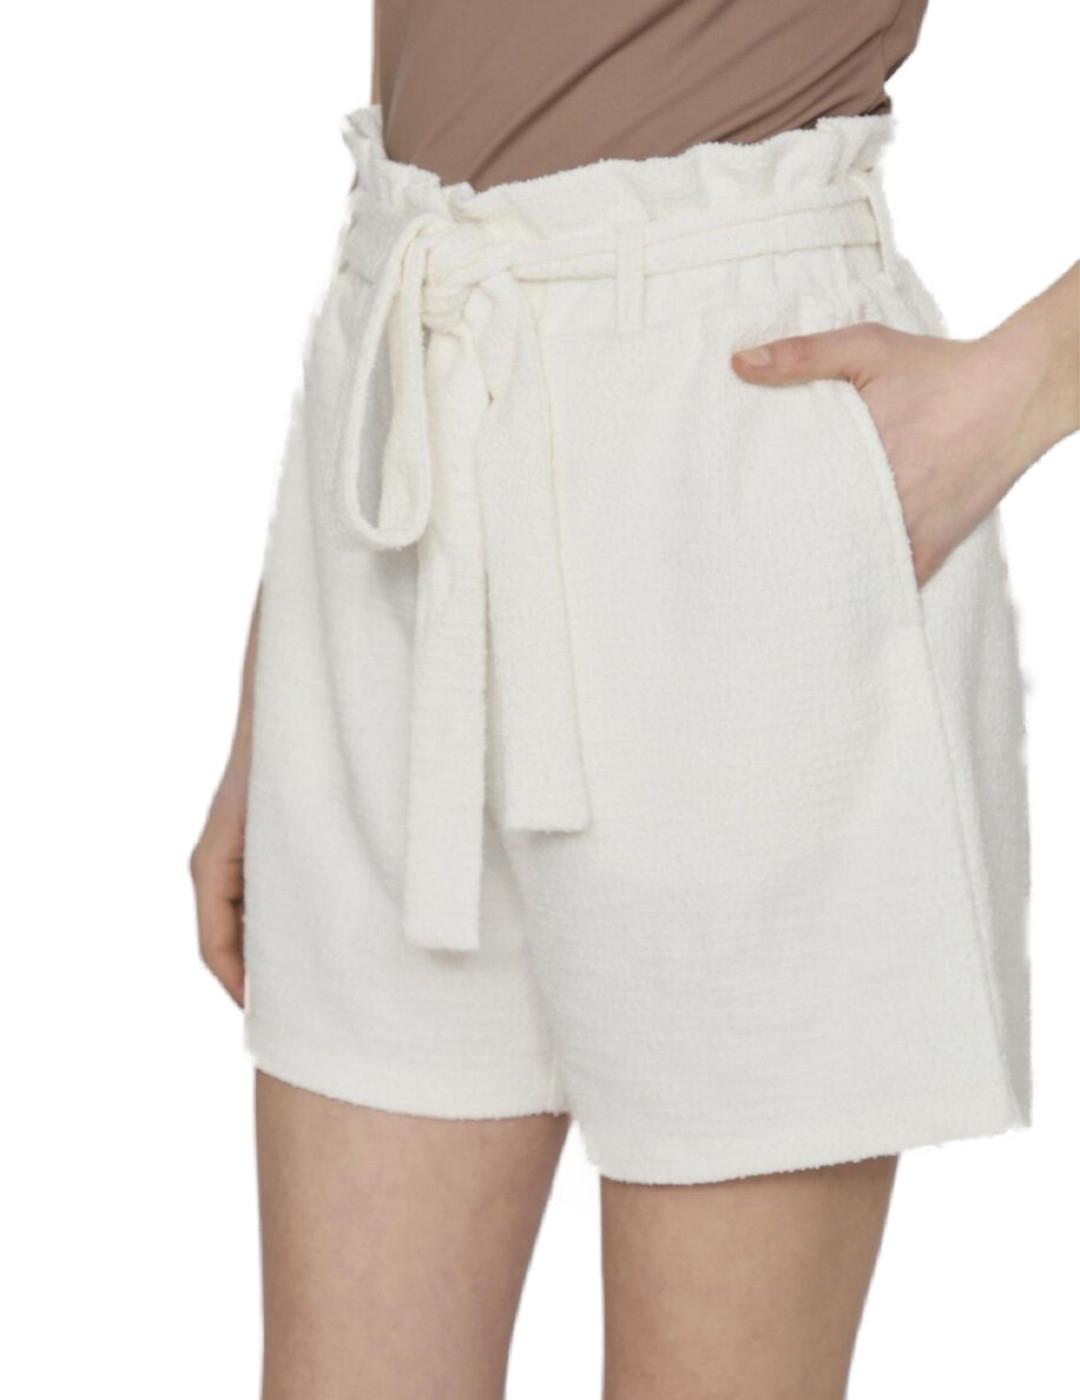 Shorts Vila Amy beige de tela con cinturón para mujer